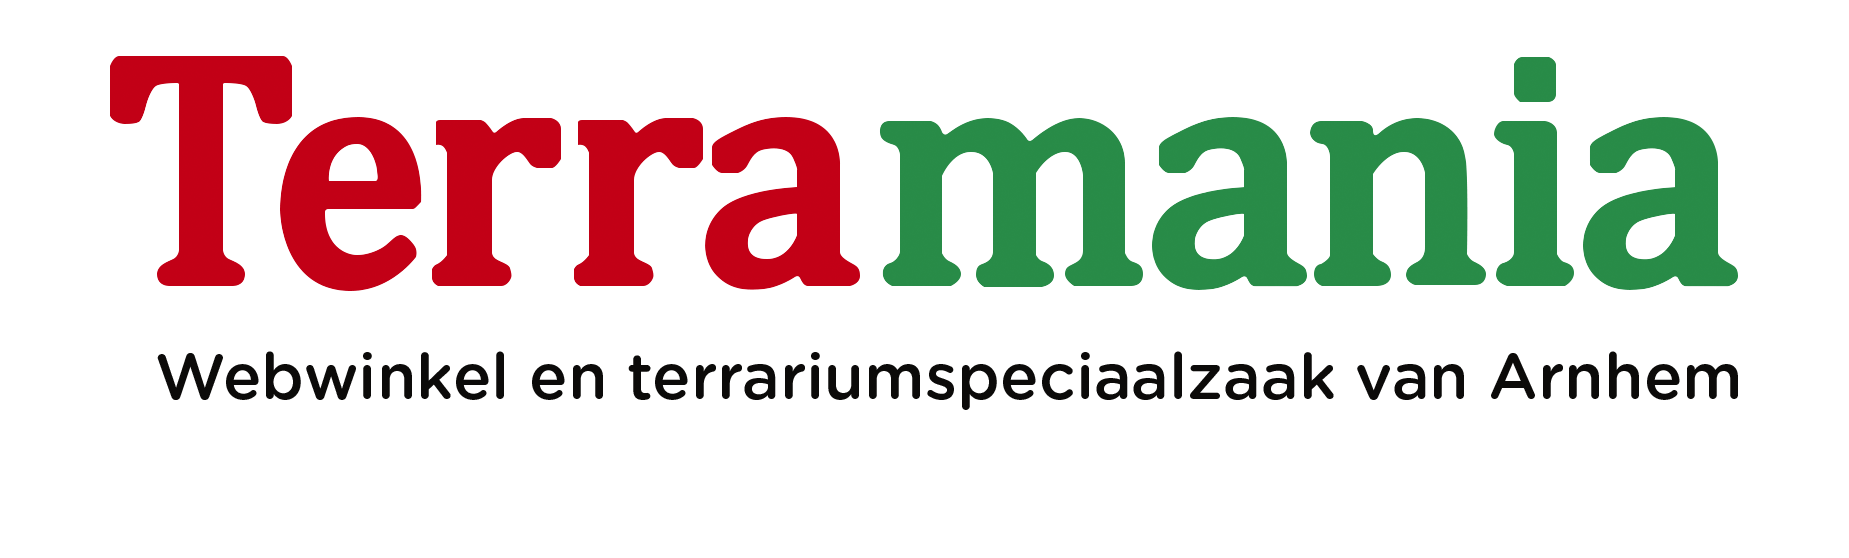 Terramania 